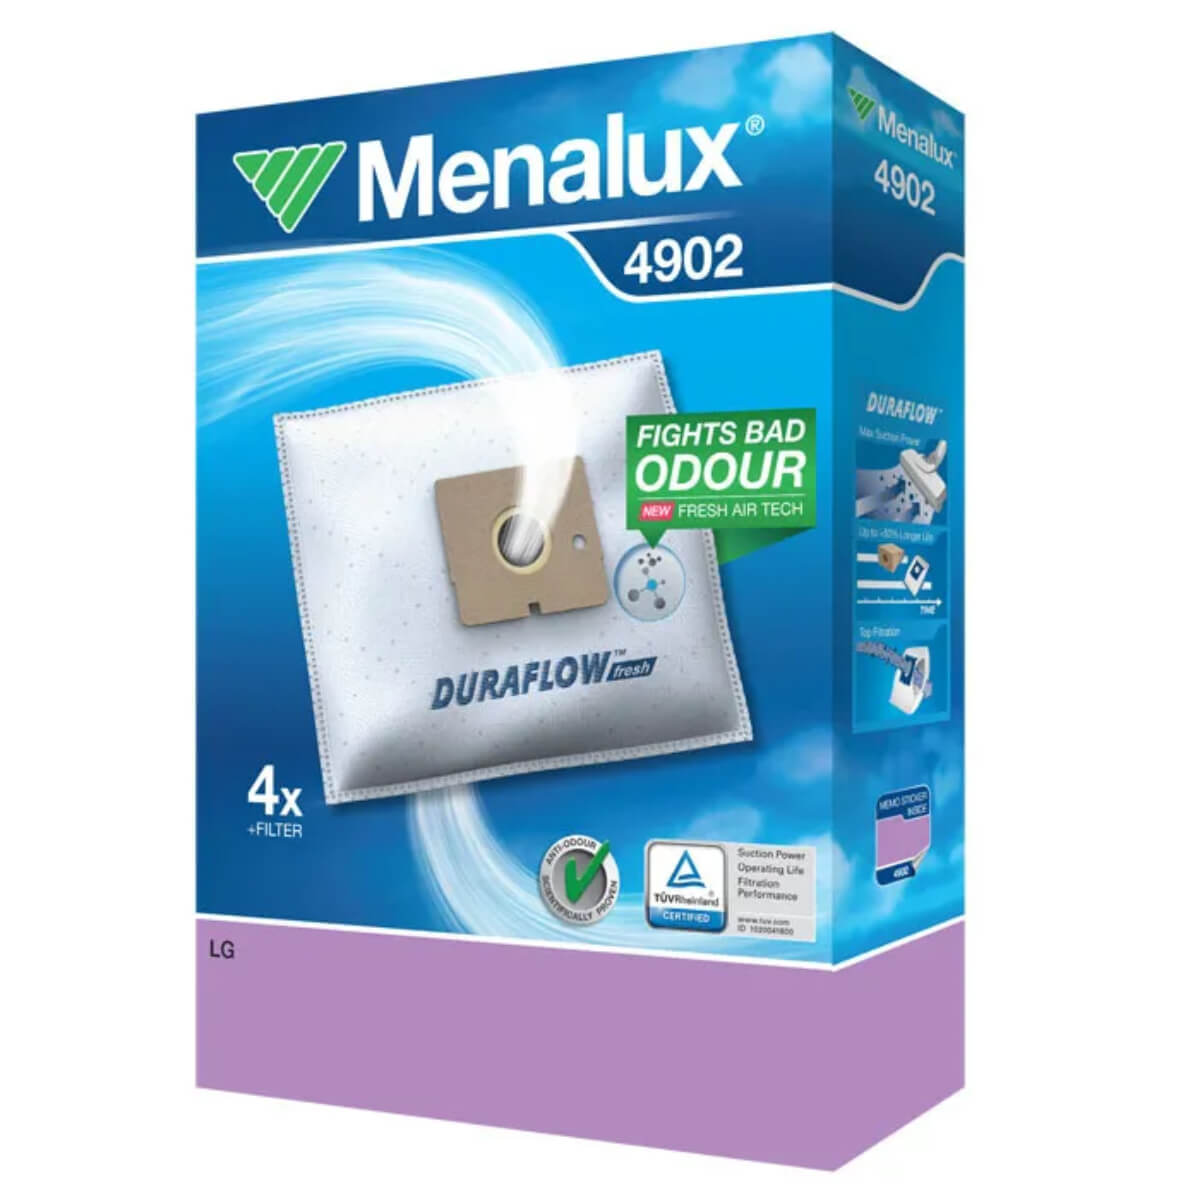 Мешки для пылесоса Menalux 4902 4 шт + фильтр